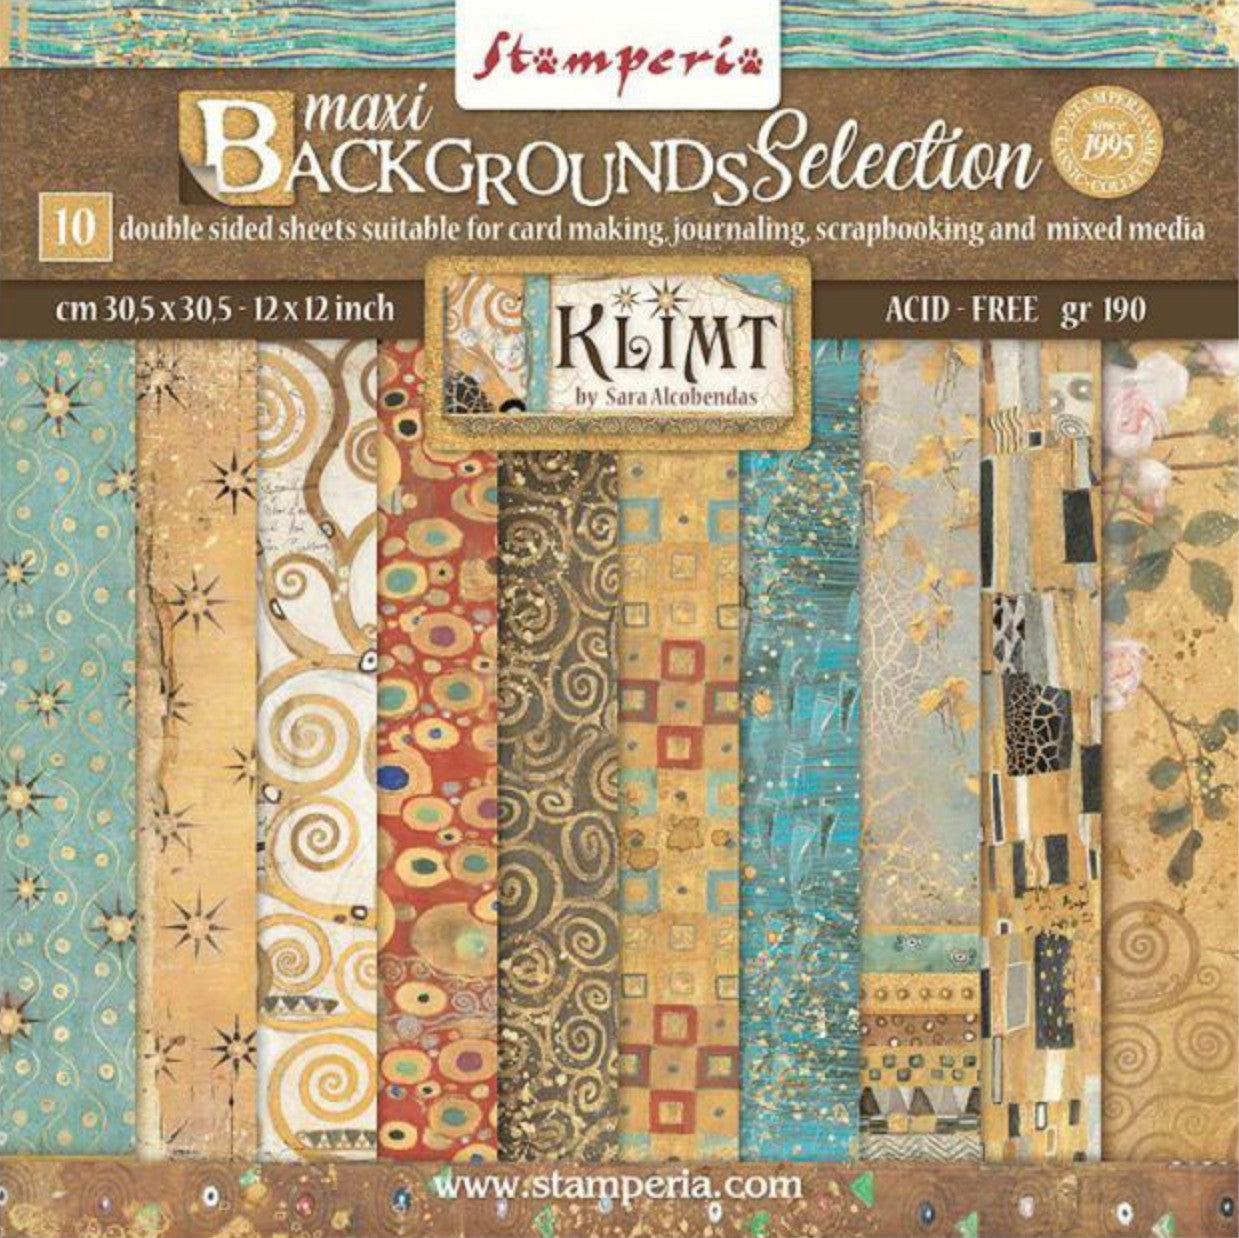 Paquete de papel de fondo de doble cara Stamperia (12"x12") - Klimt 